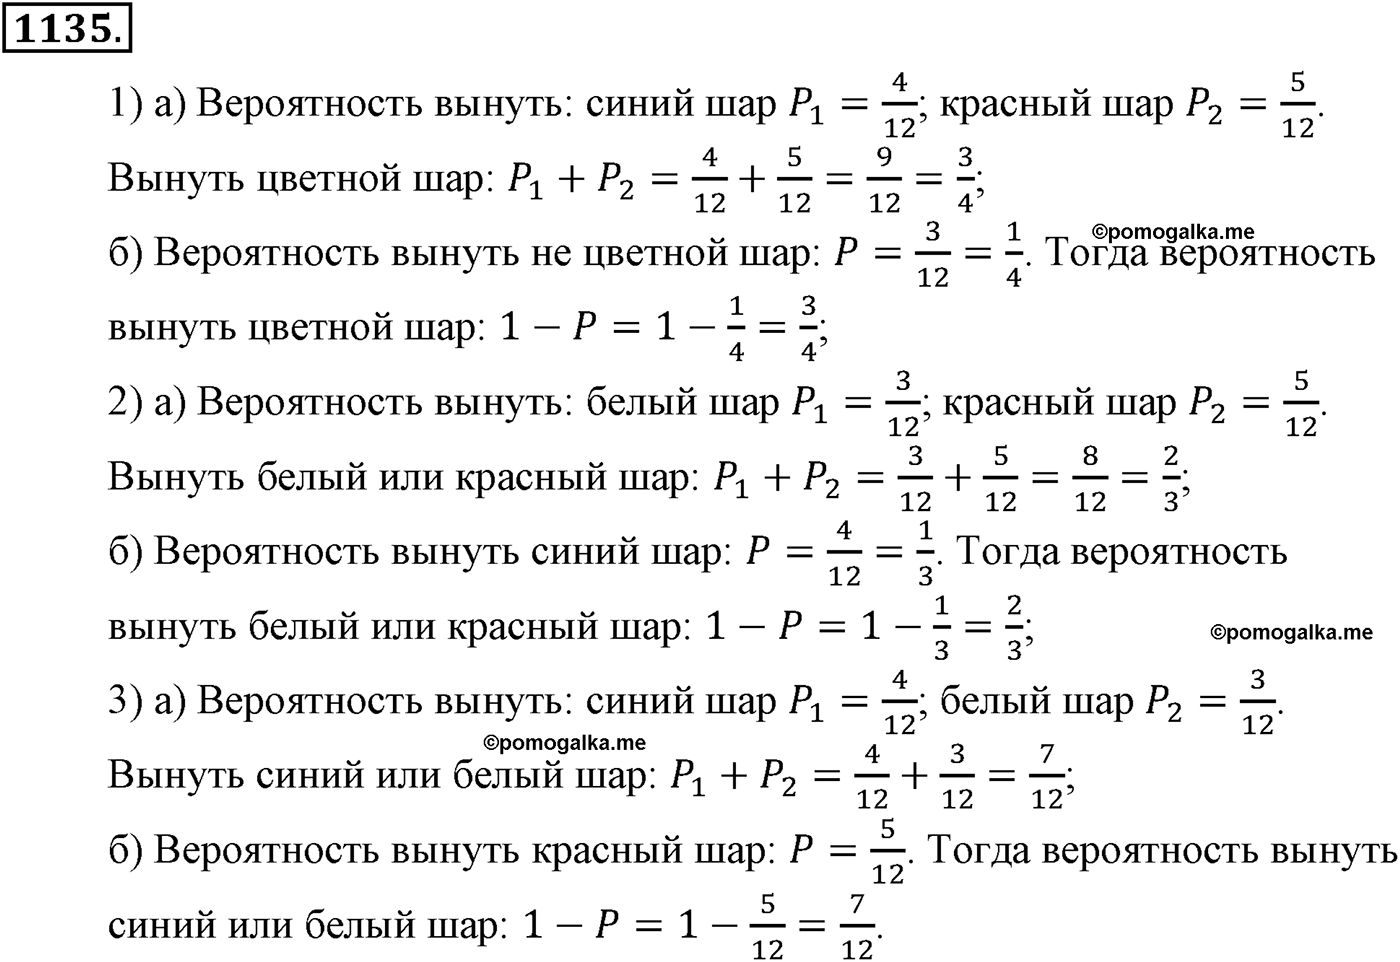 разбор задачи №1135 по алгебре за 10-11 класс из учебника Алимова, Колягина